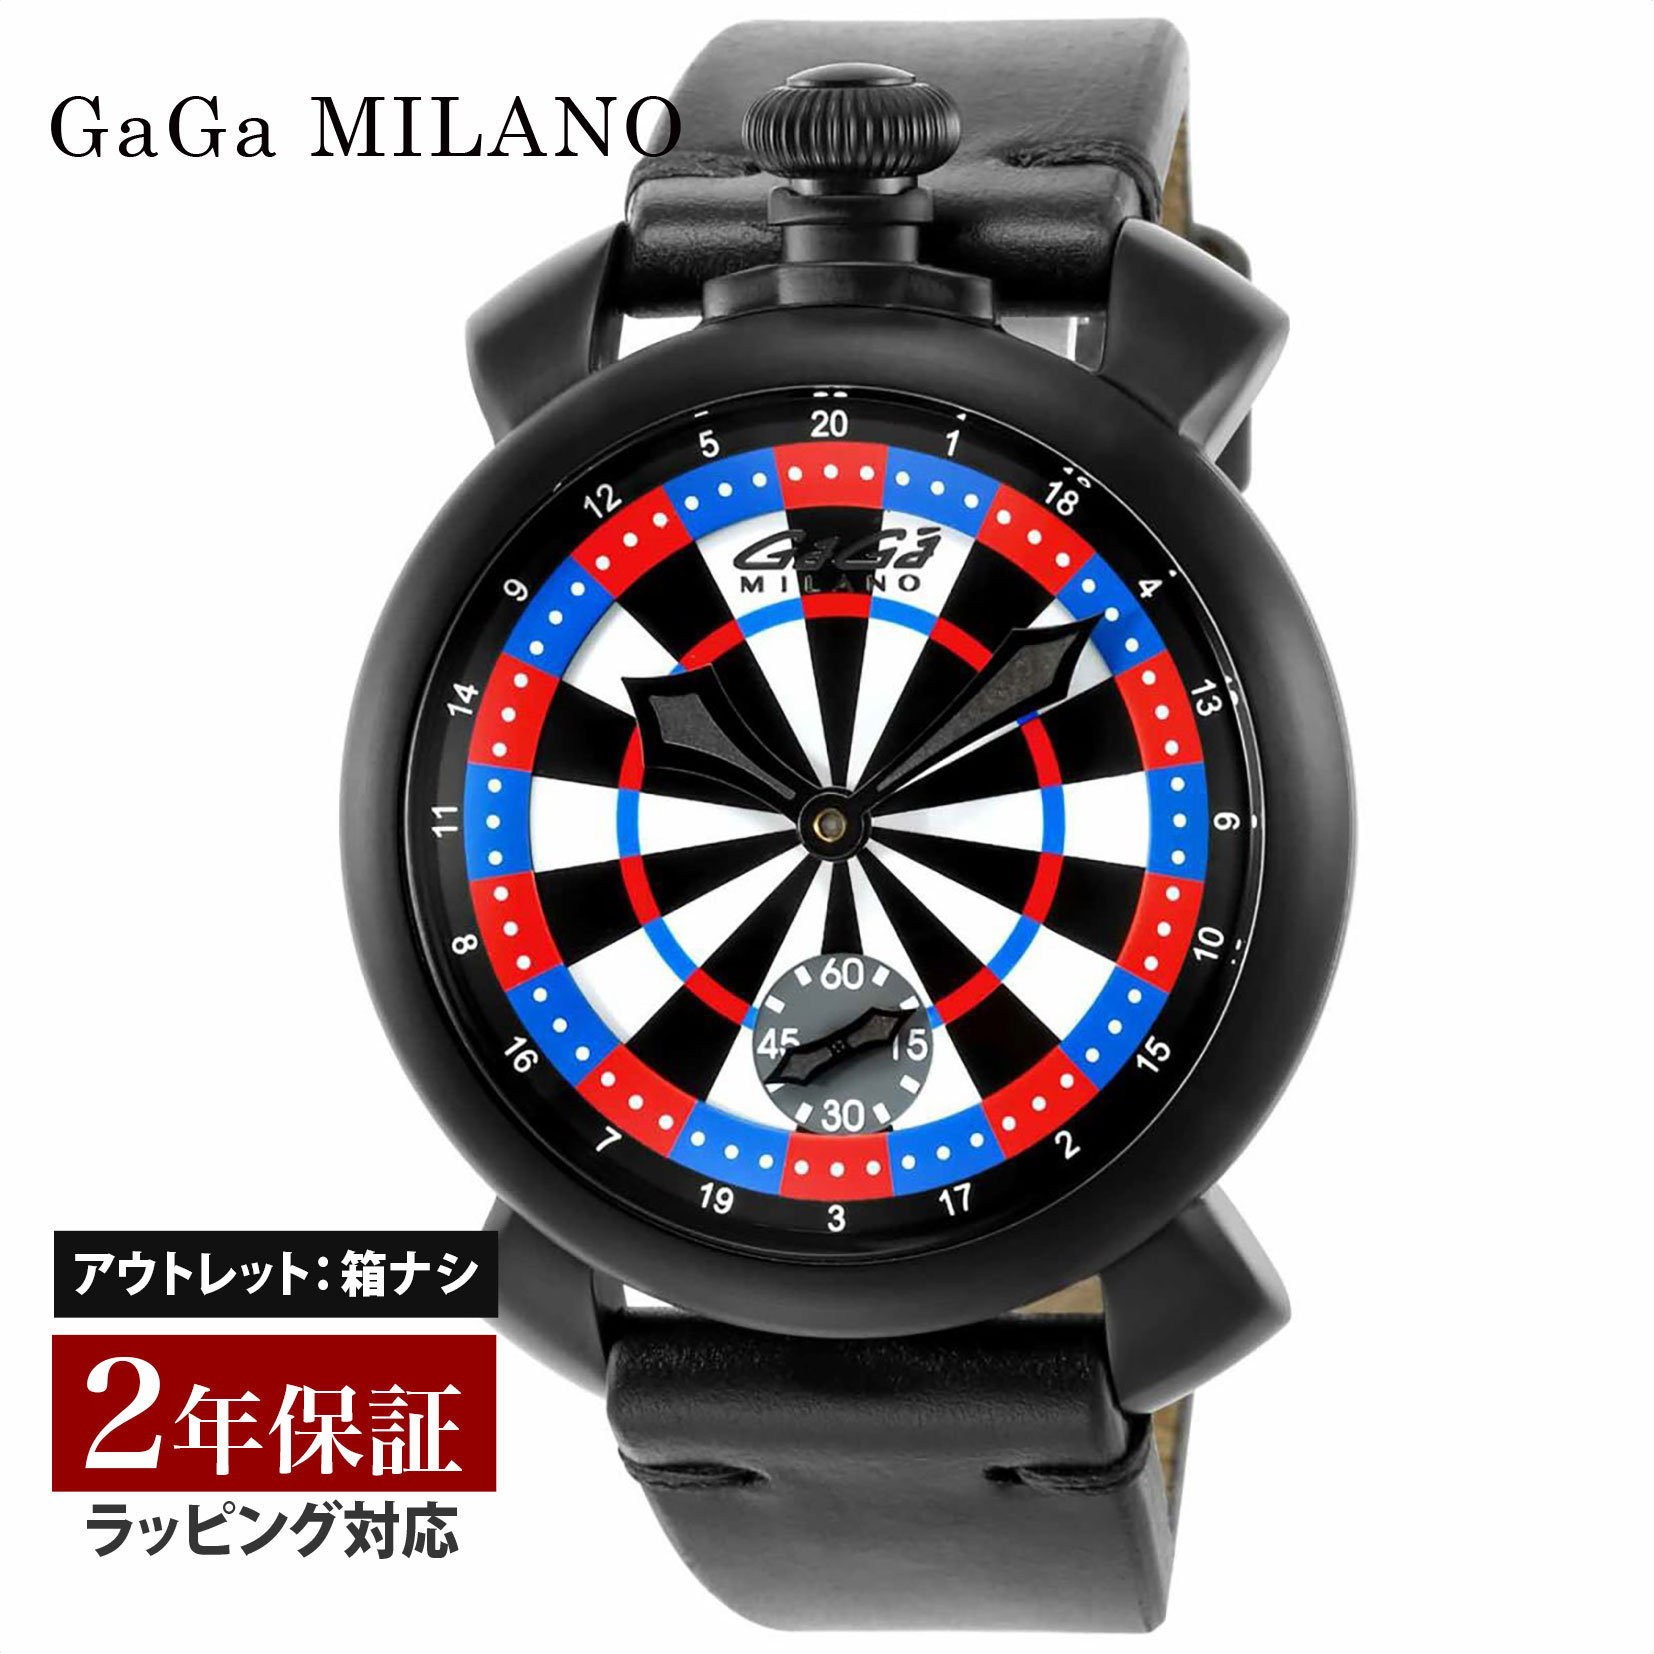 【クリアランスSALE】 GaGaMILAN ガガミラノ MANUALE 48MM 手巻き メンズ マルチカラー 5012LV03 腕時計 高級腕時計 ブランド 